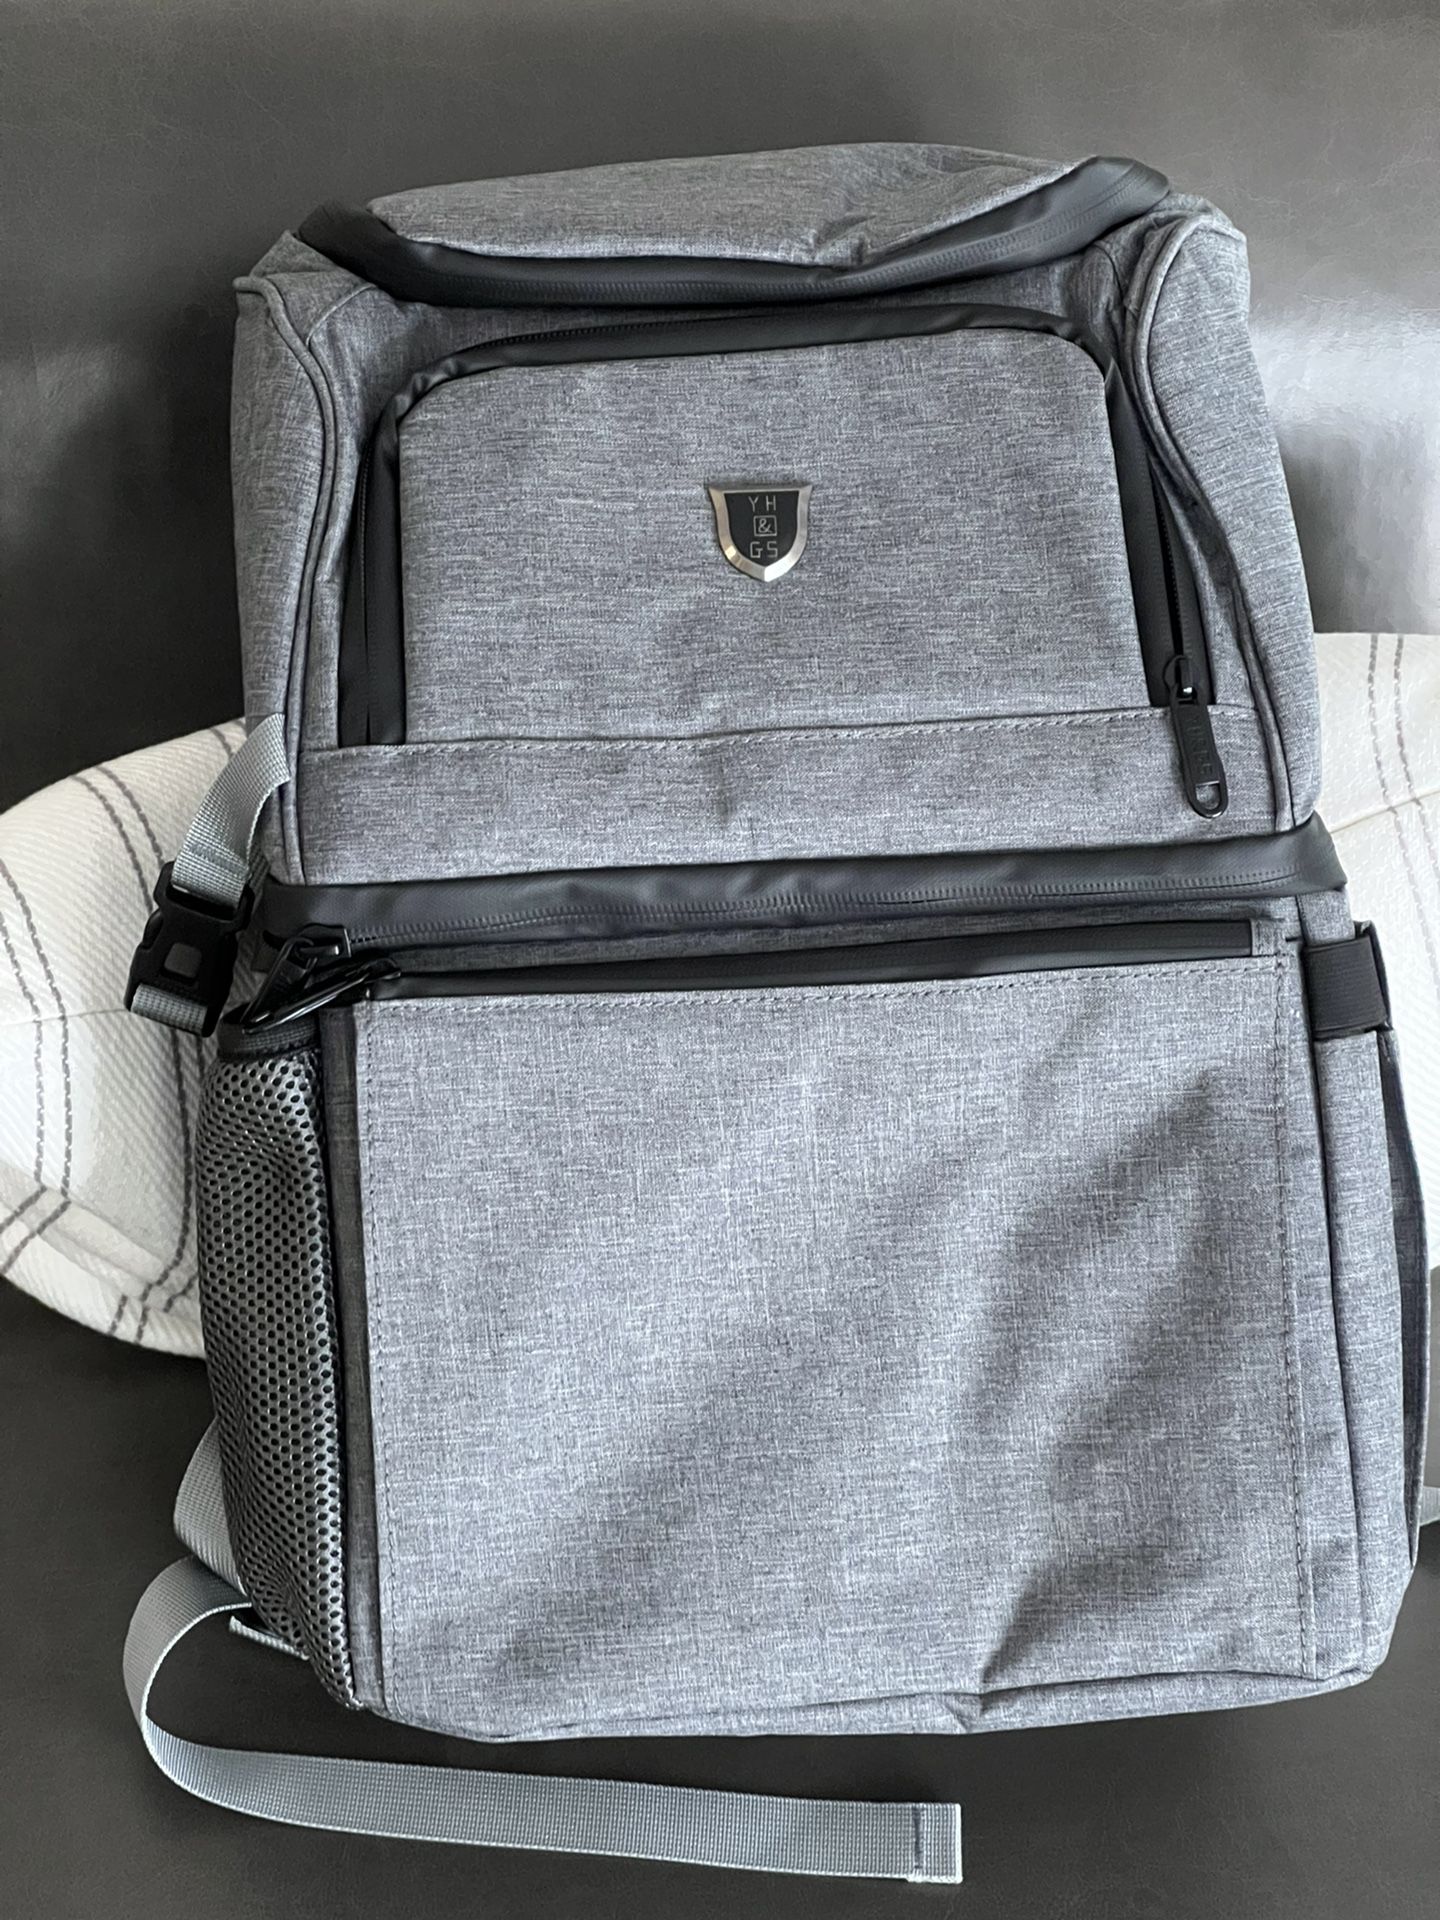 Backpack - Cooler Backpack - Brand New 